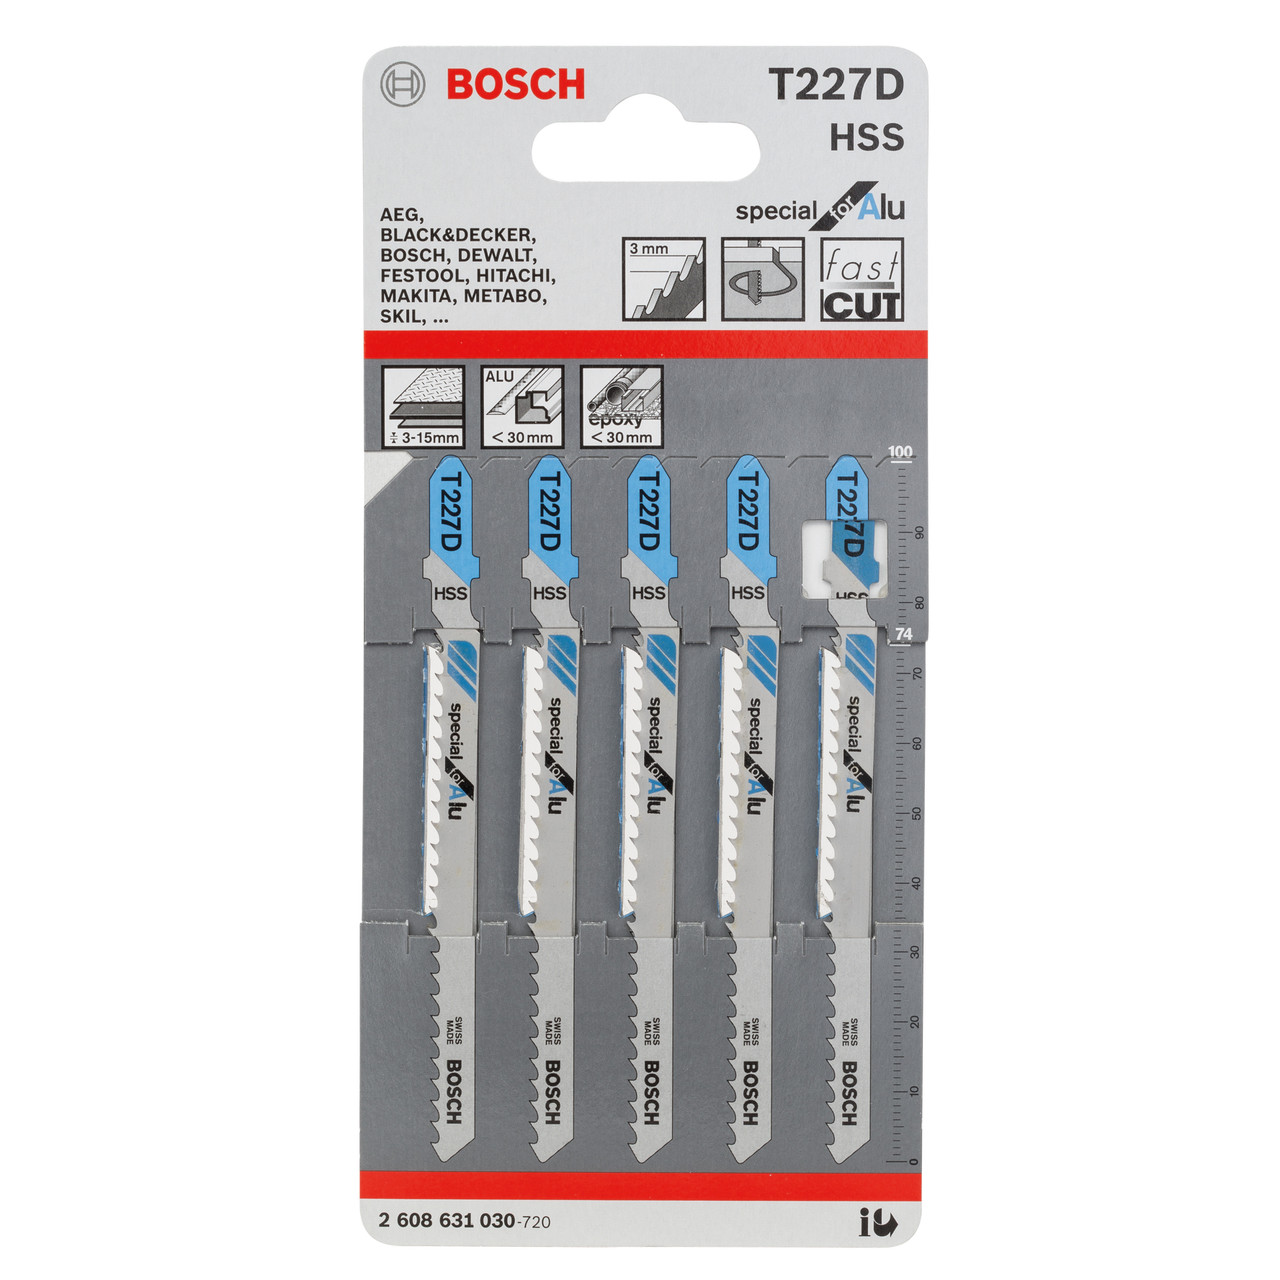 Photos - Electric Jigsaw Bosch T227D  Jigsaw Blades for Aluminium (5 Pack) T227D-260863 (2608631030)